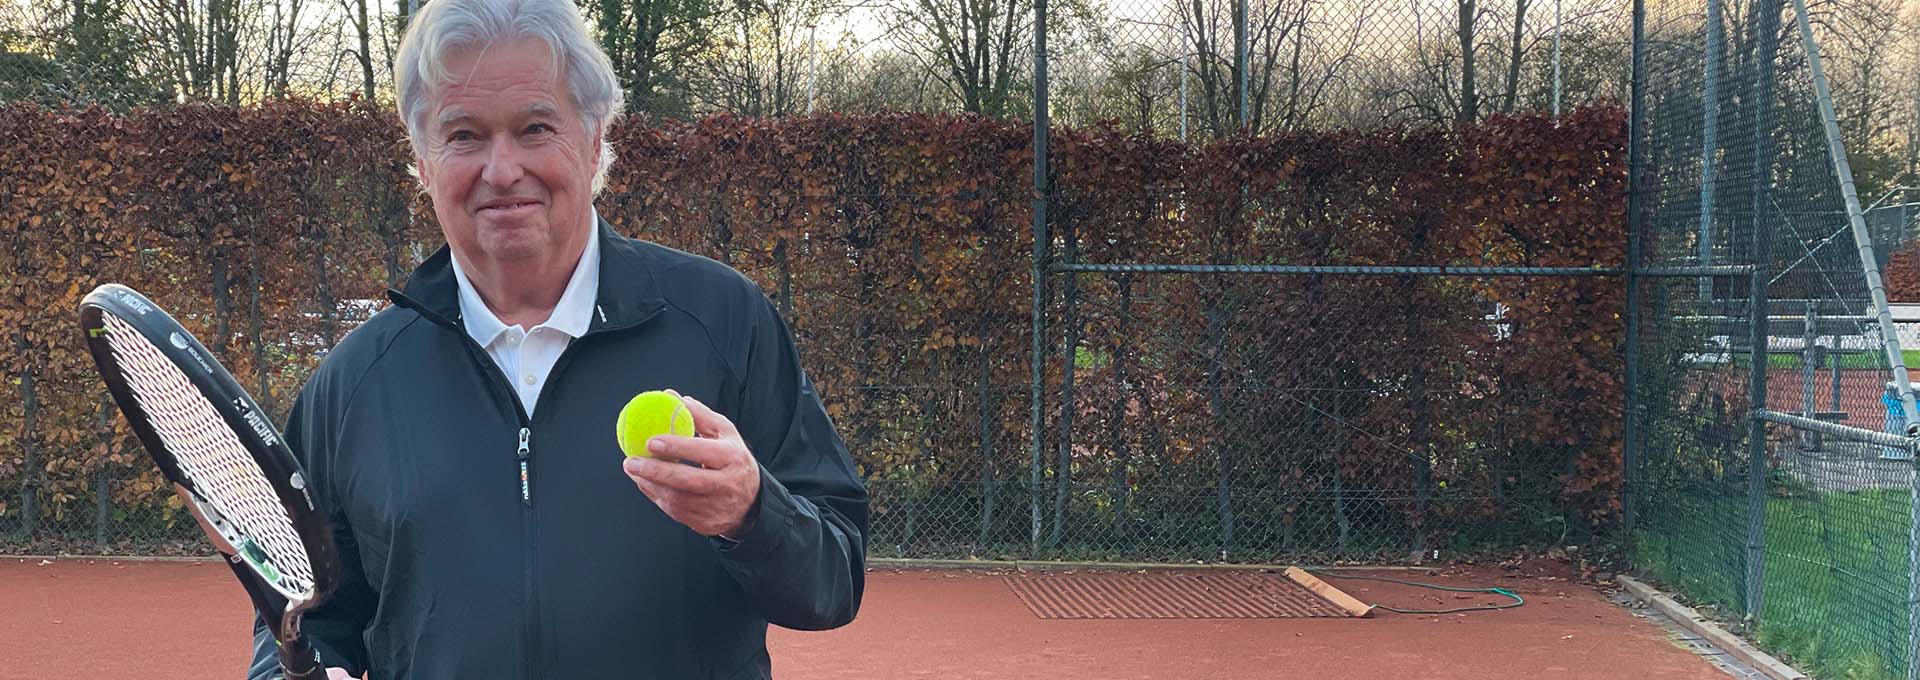 Bernafon Alpha işitme cihazı kullanıcısı (erkek), elinde tenis topu ve raketle sahada oynamaya hazır bir şekilde kameraya bakıyor